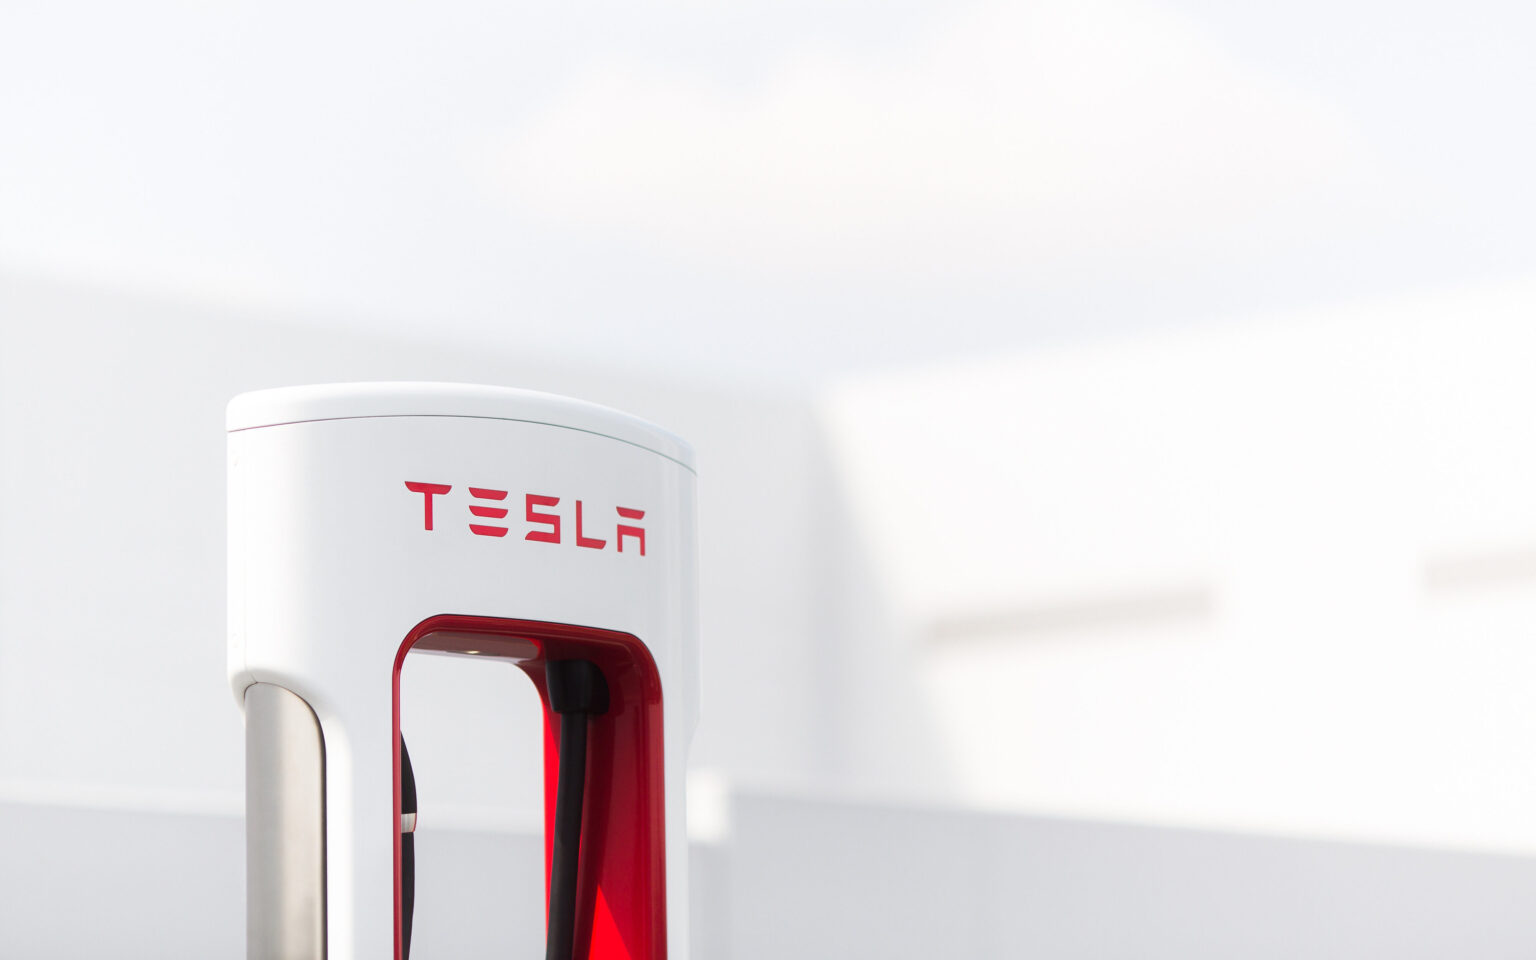 Tesla Supercharger Offer exterior image 2